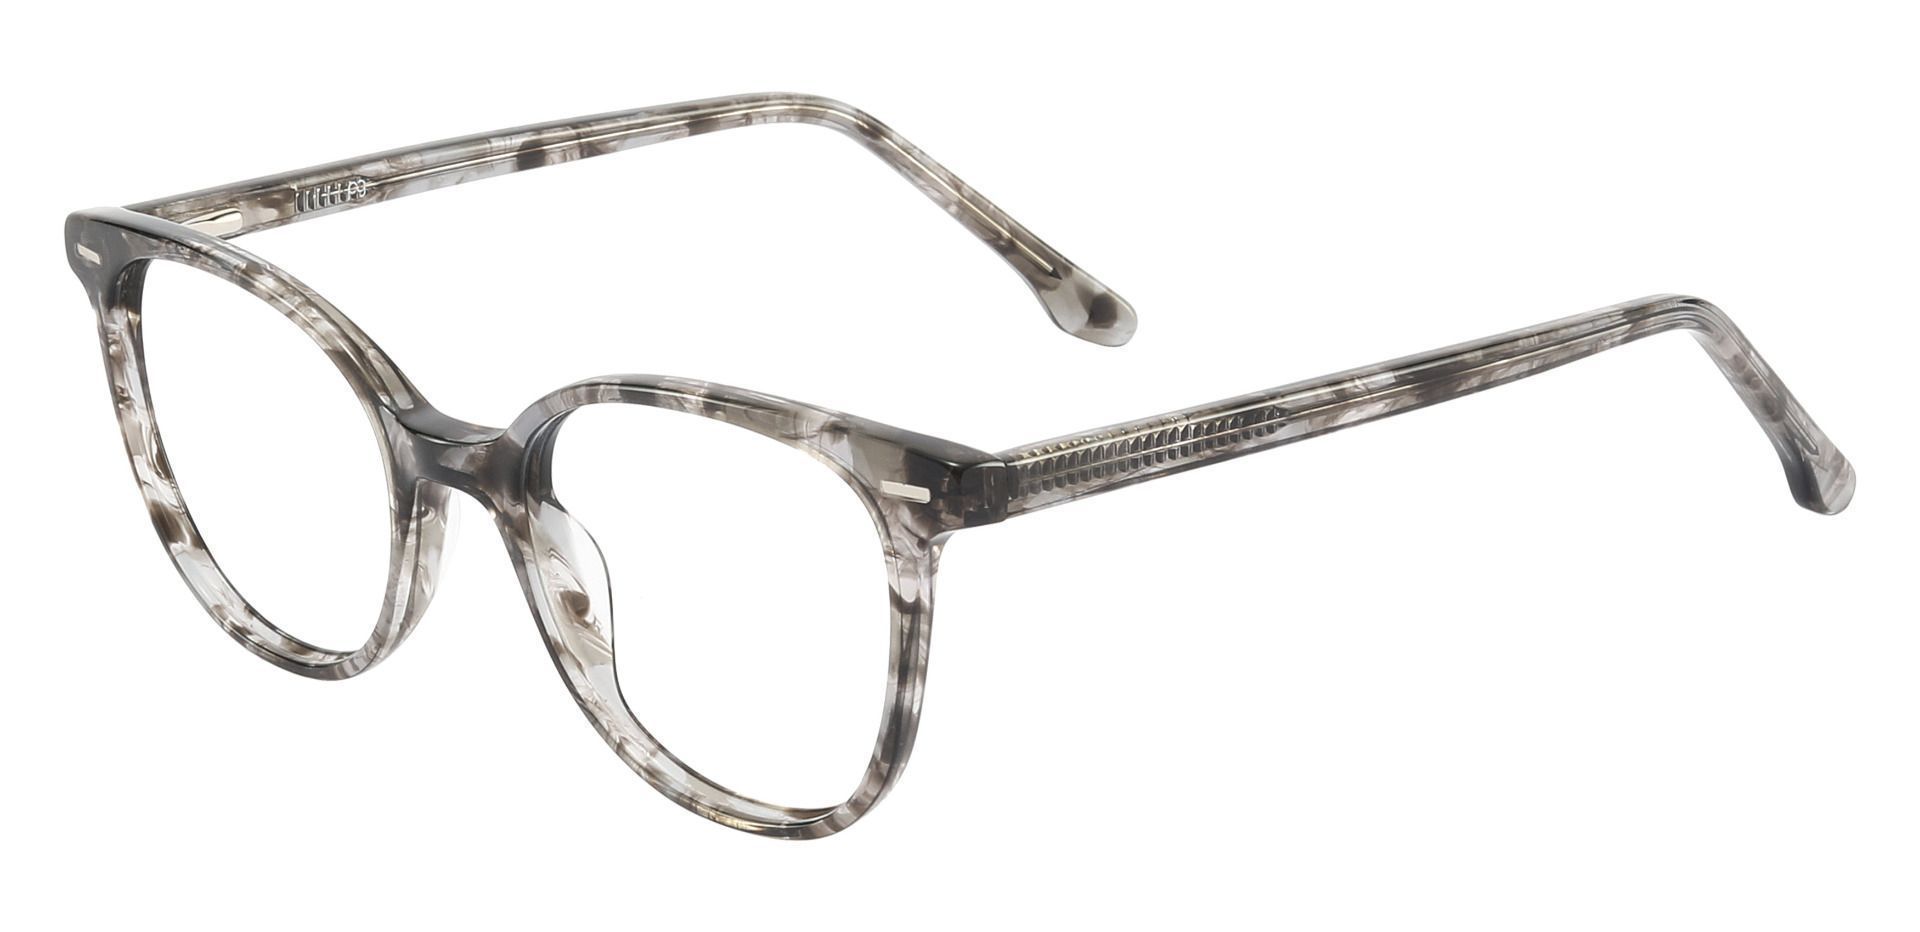 Chili Oval Non-Rx Glasses - Gray